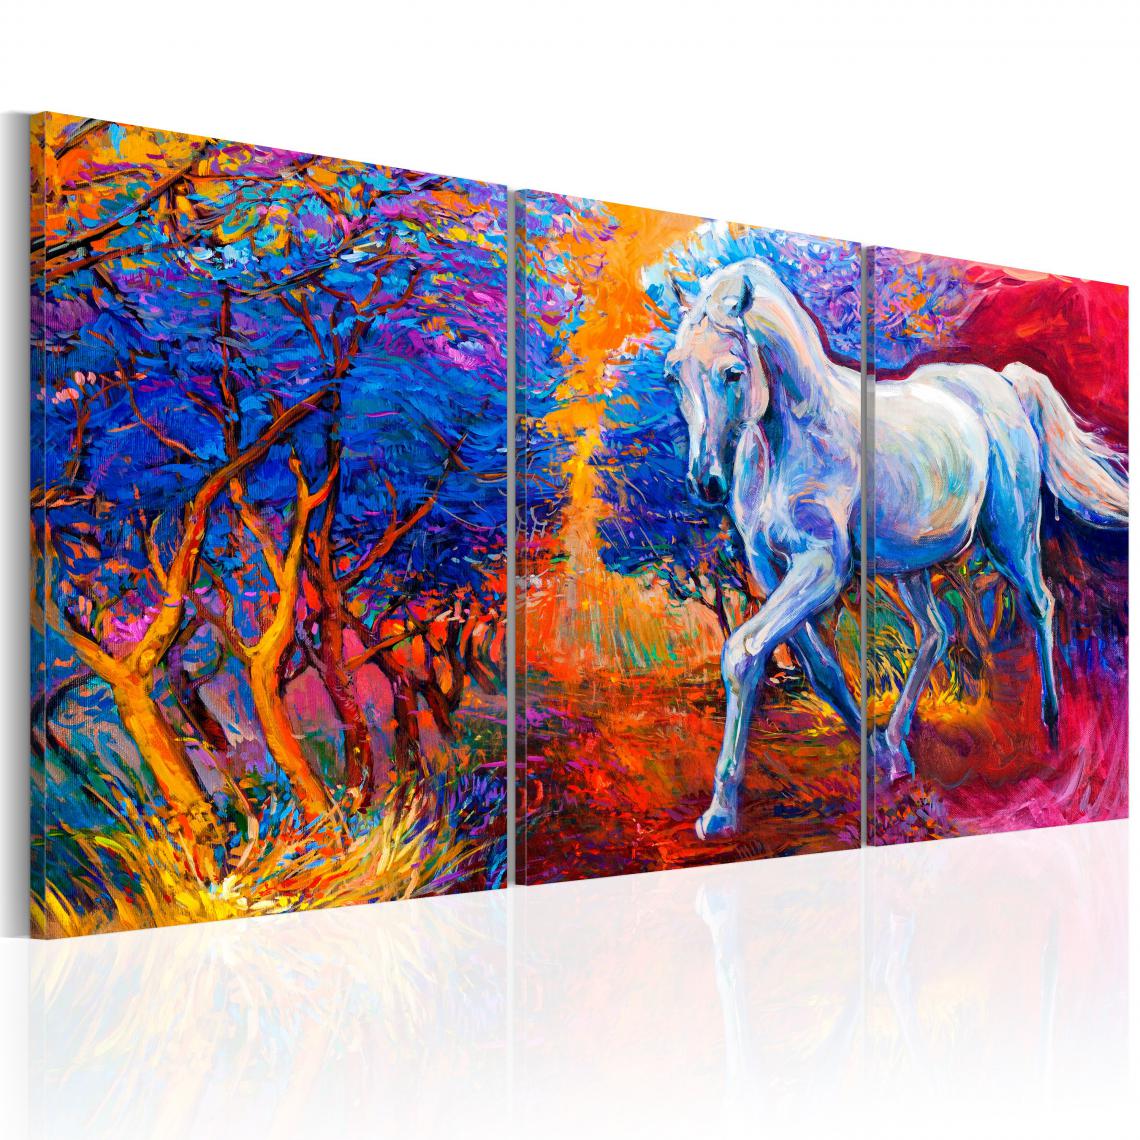 Decoshop26 - Tableau sur toile en 3 panneaux décoration murale image imprimée cadre en bois à suspendre Vallée de la fantaisie 60x30 cm 11_0003008 - Tableaux, peintures